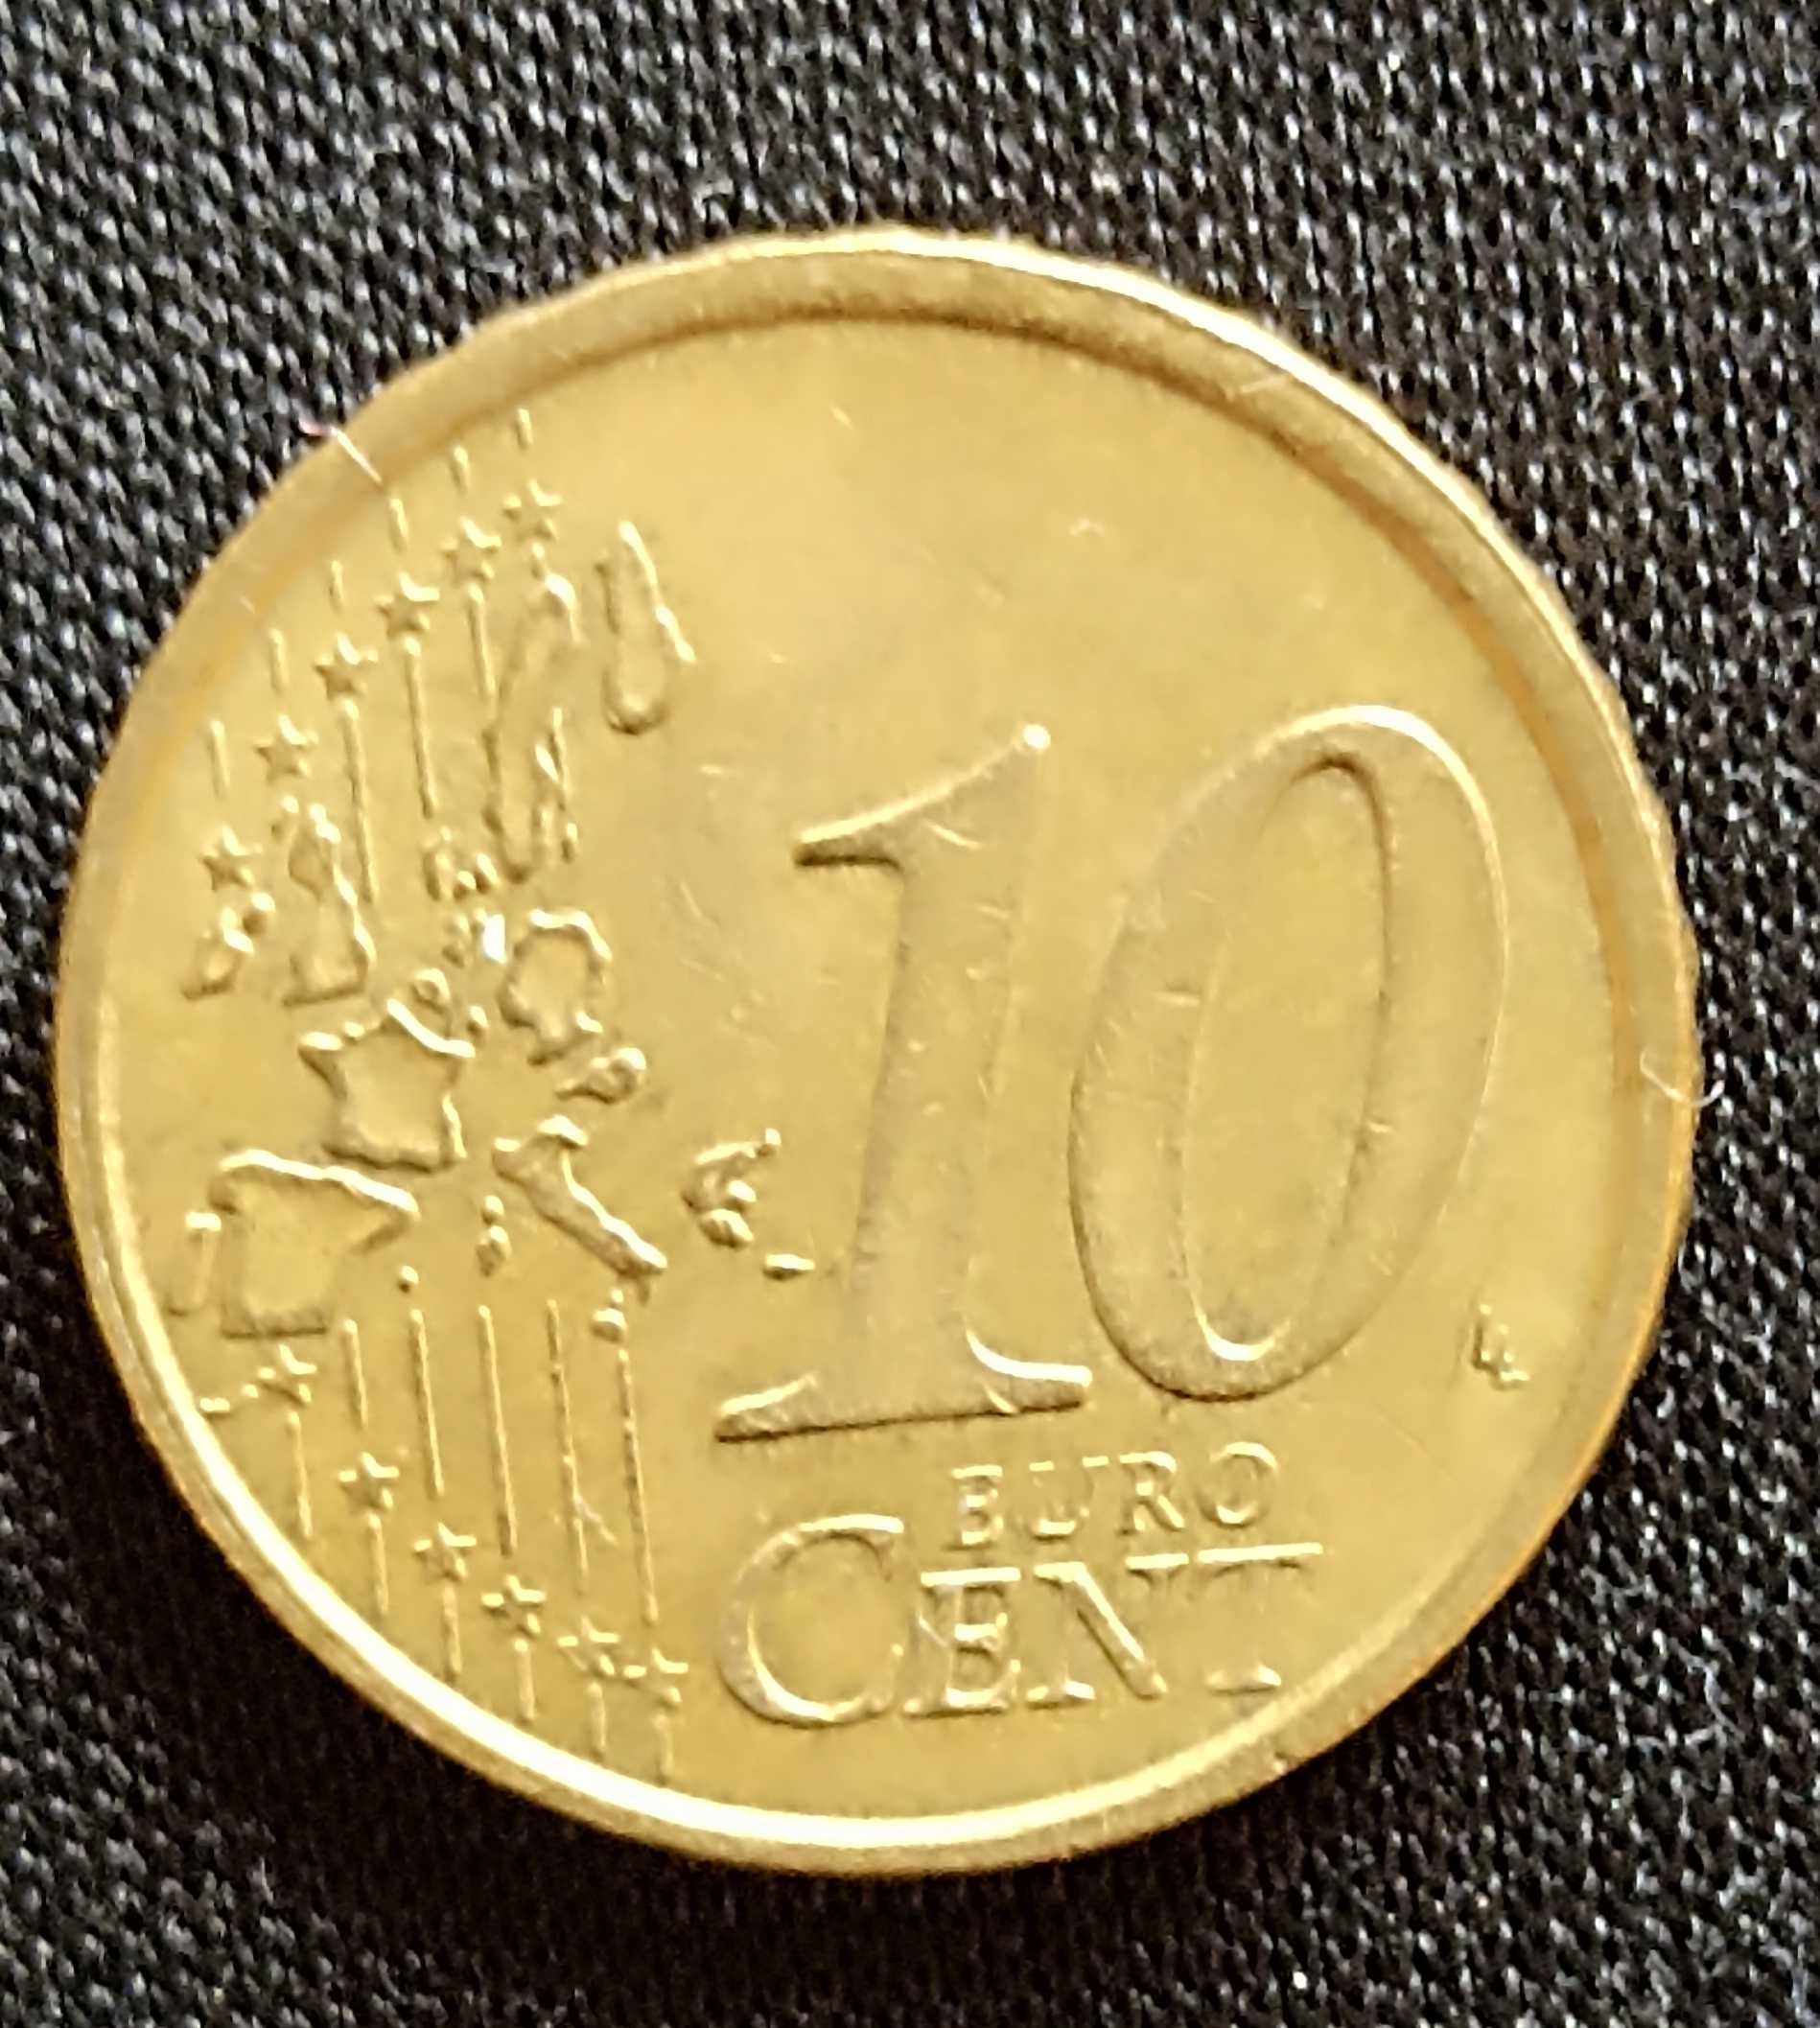 Monede €uro vechi.